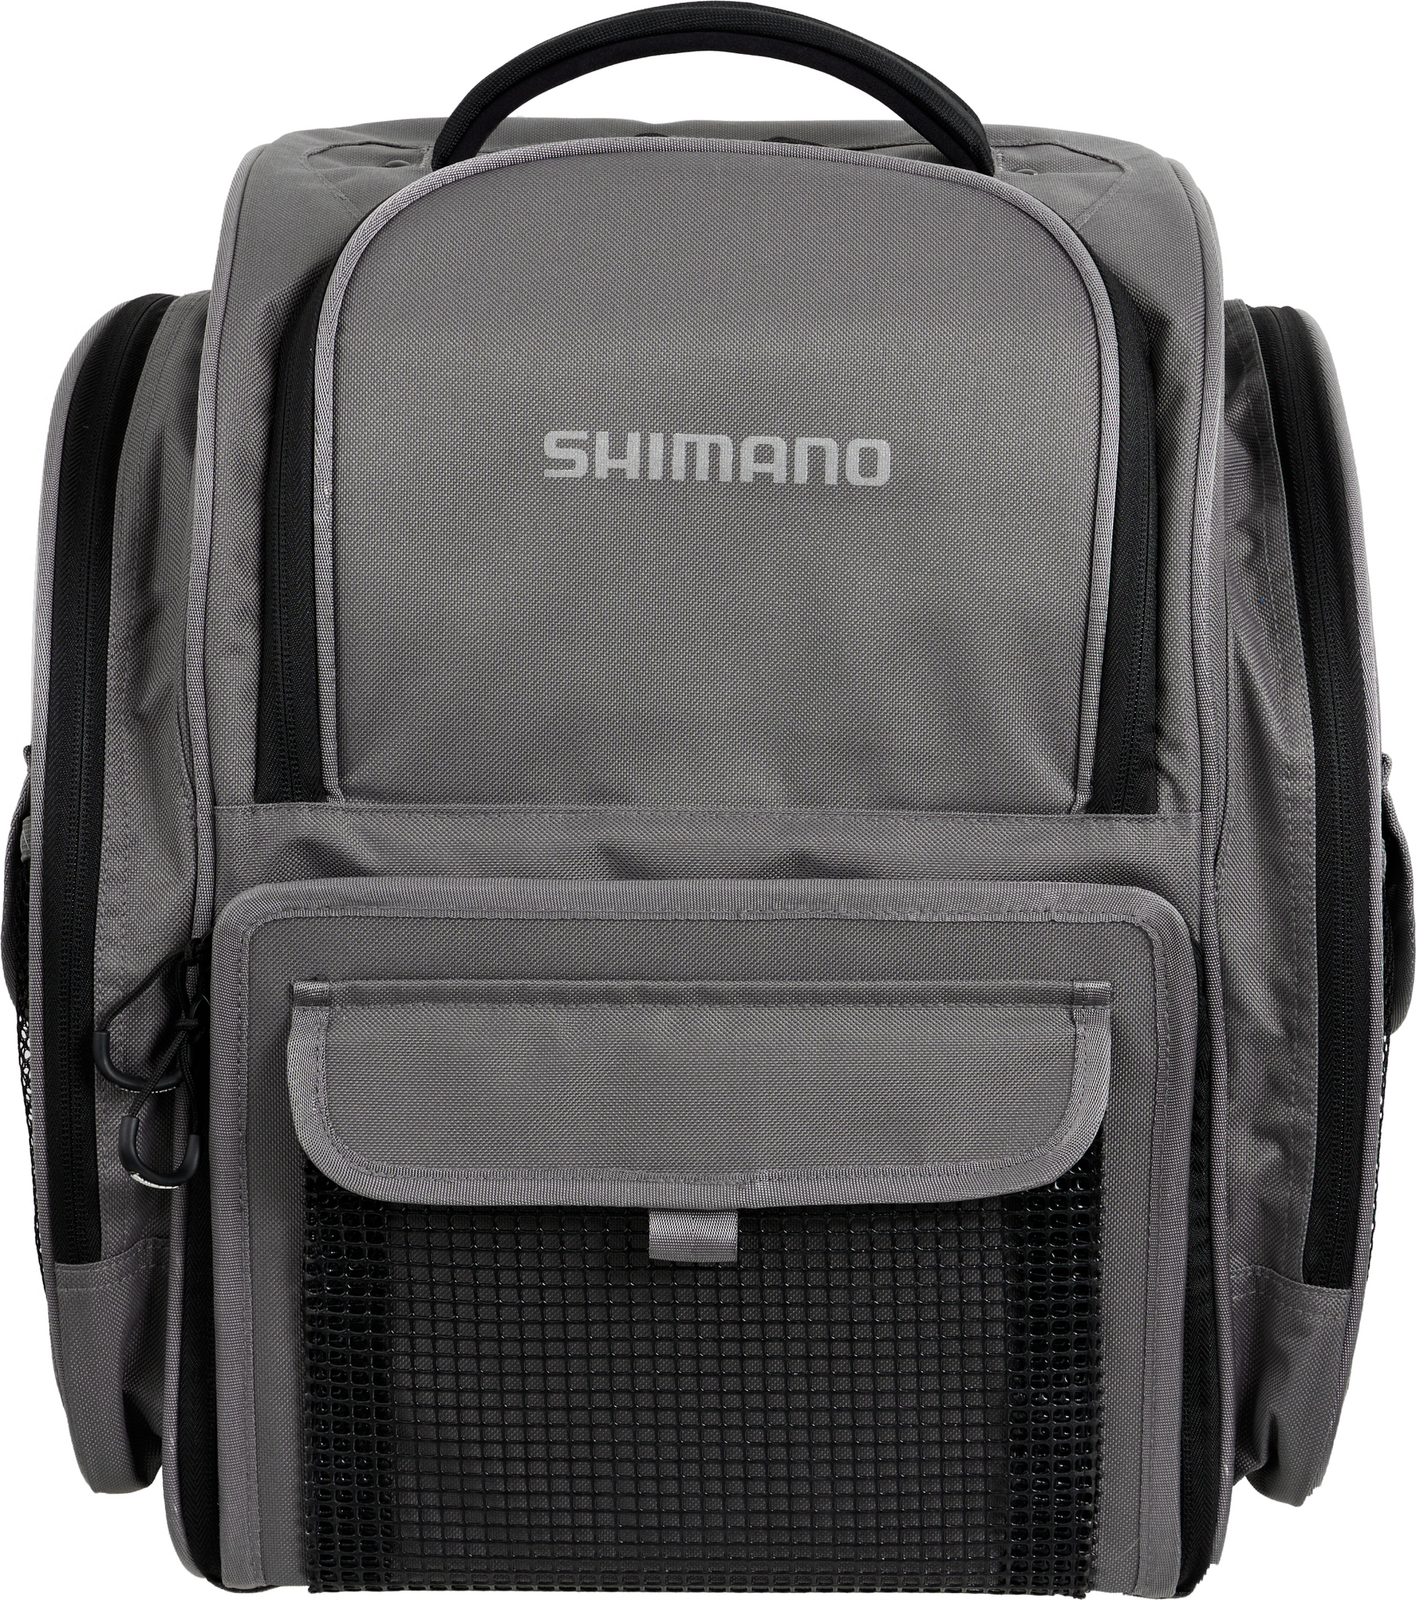 SHIMANO BACK PACK & TACKLE BOXES LUGC-15 - Shimano